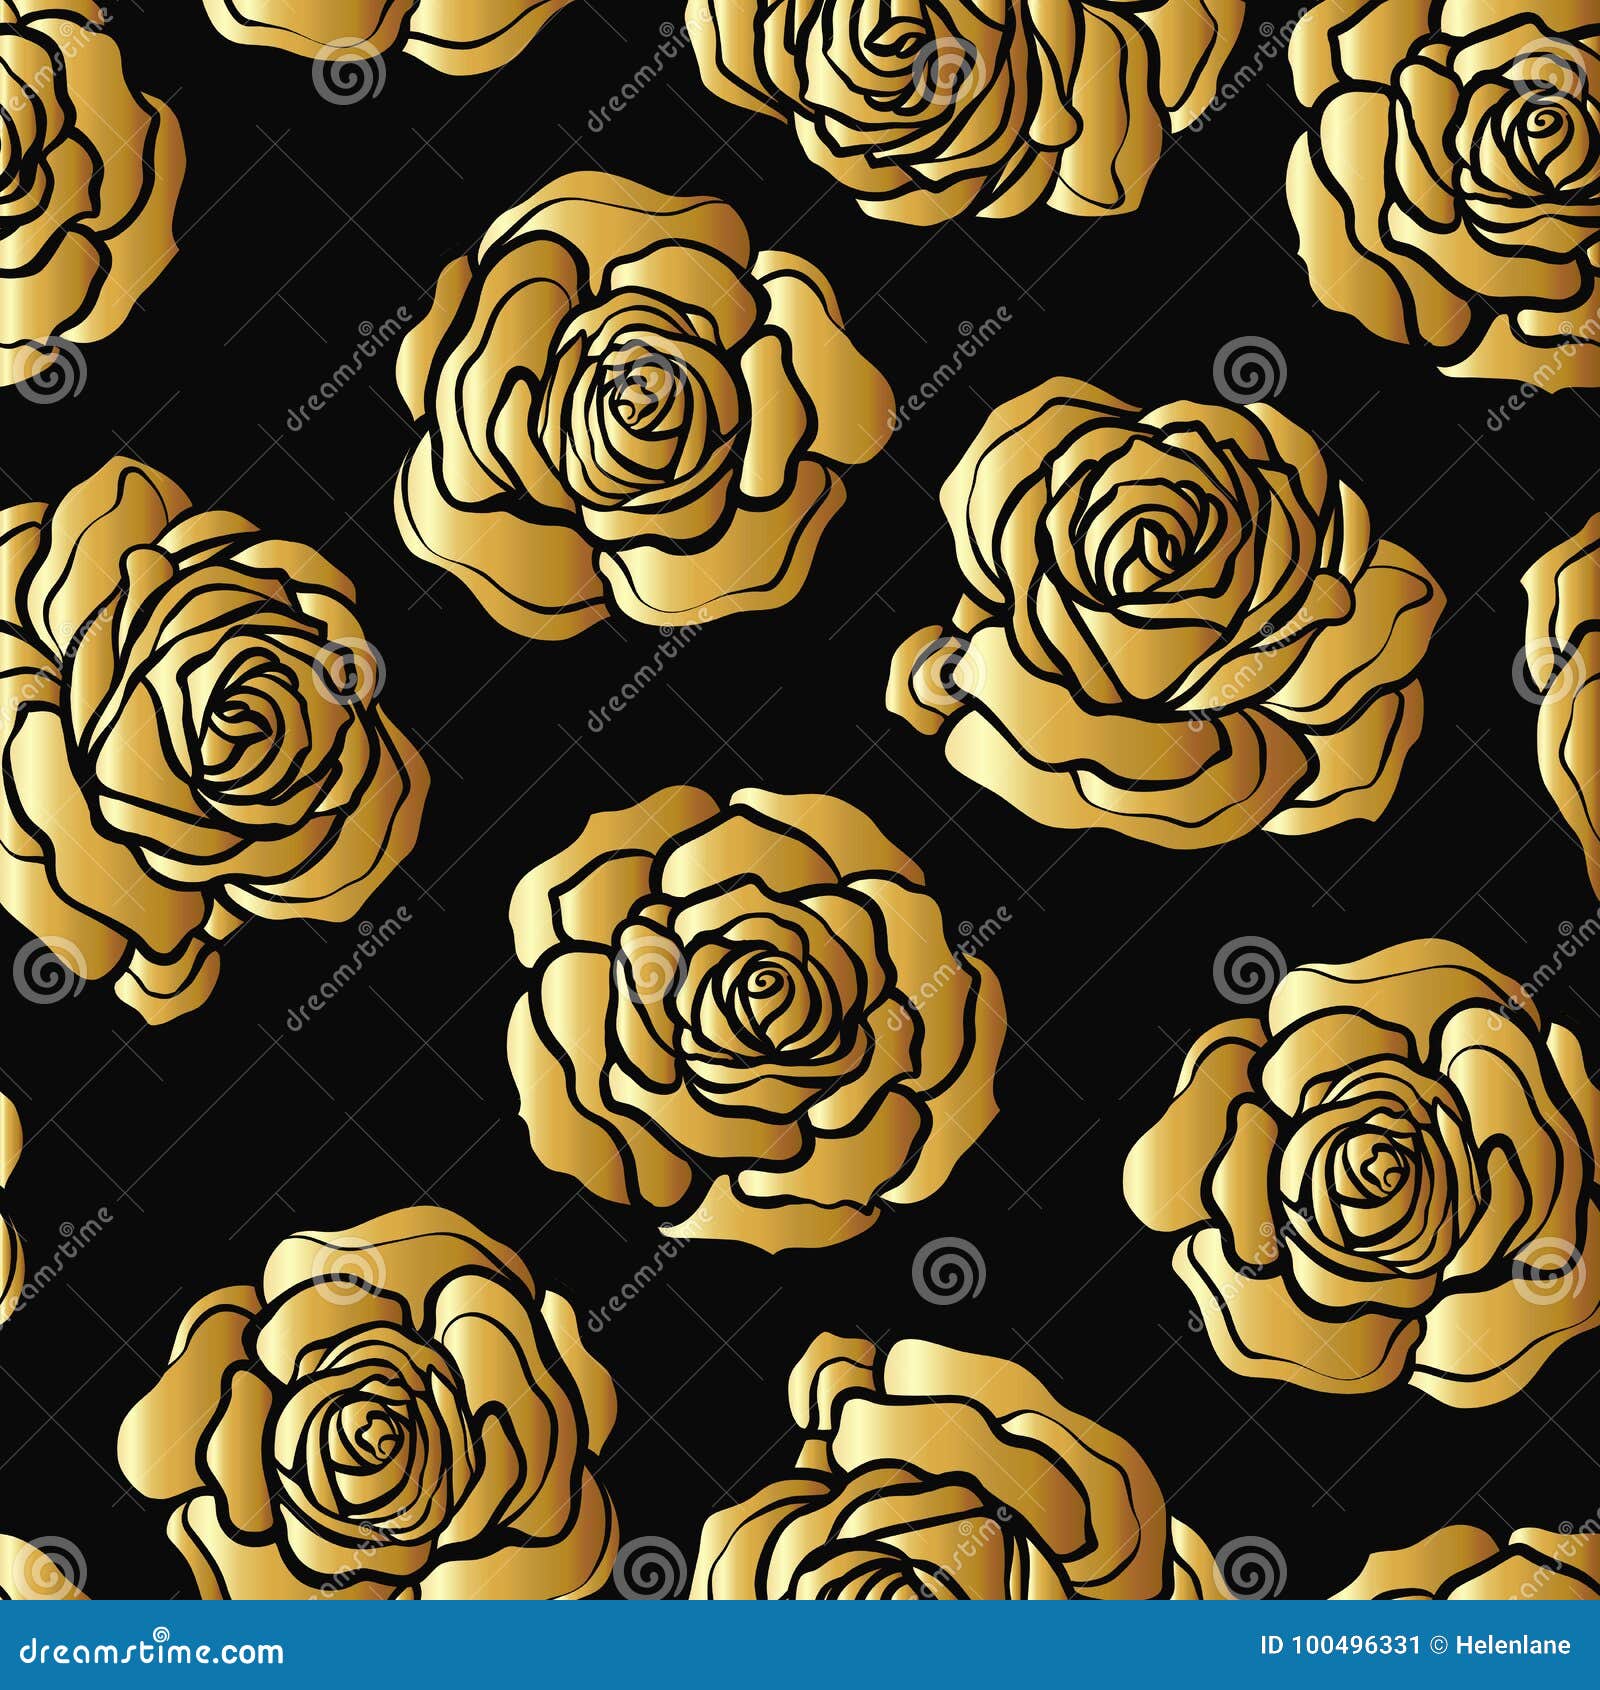 Họa tiết hoa hồng vàng trên nền đen - Họa tiết hoa hồng vàng trên nền đen là một sự kết hợp tuyệt đẹp và bắt mắt. Những cánh hoa tươi sáng và nổi bật sẽ tạo nên một không gian đầy phong cách và sang trọng. Hãy xem ngay họa tiết hoa hồng vàng trên nền đen để tận hưởng một không gian đẹp mắt.